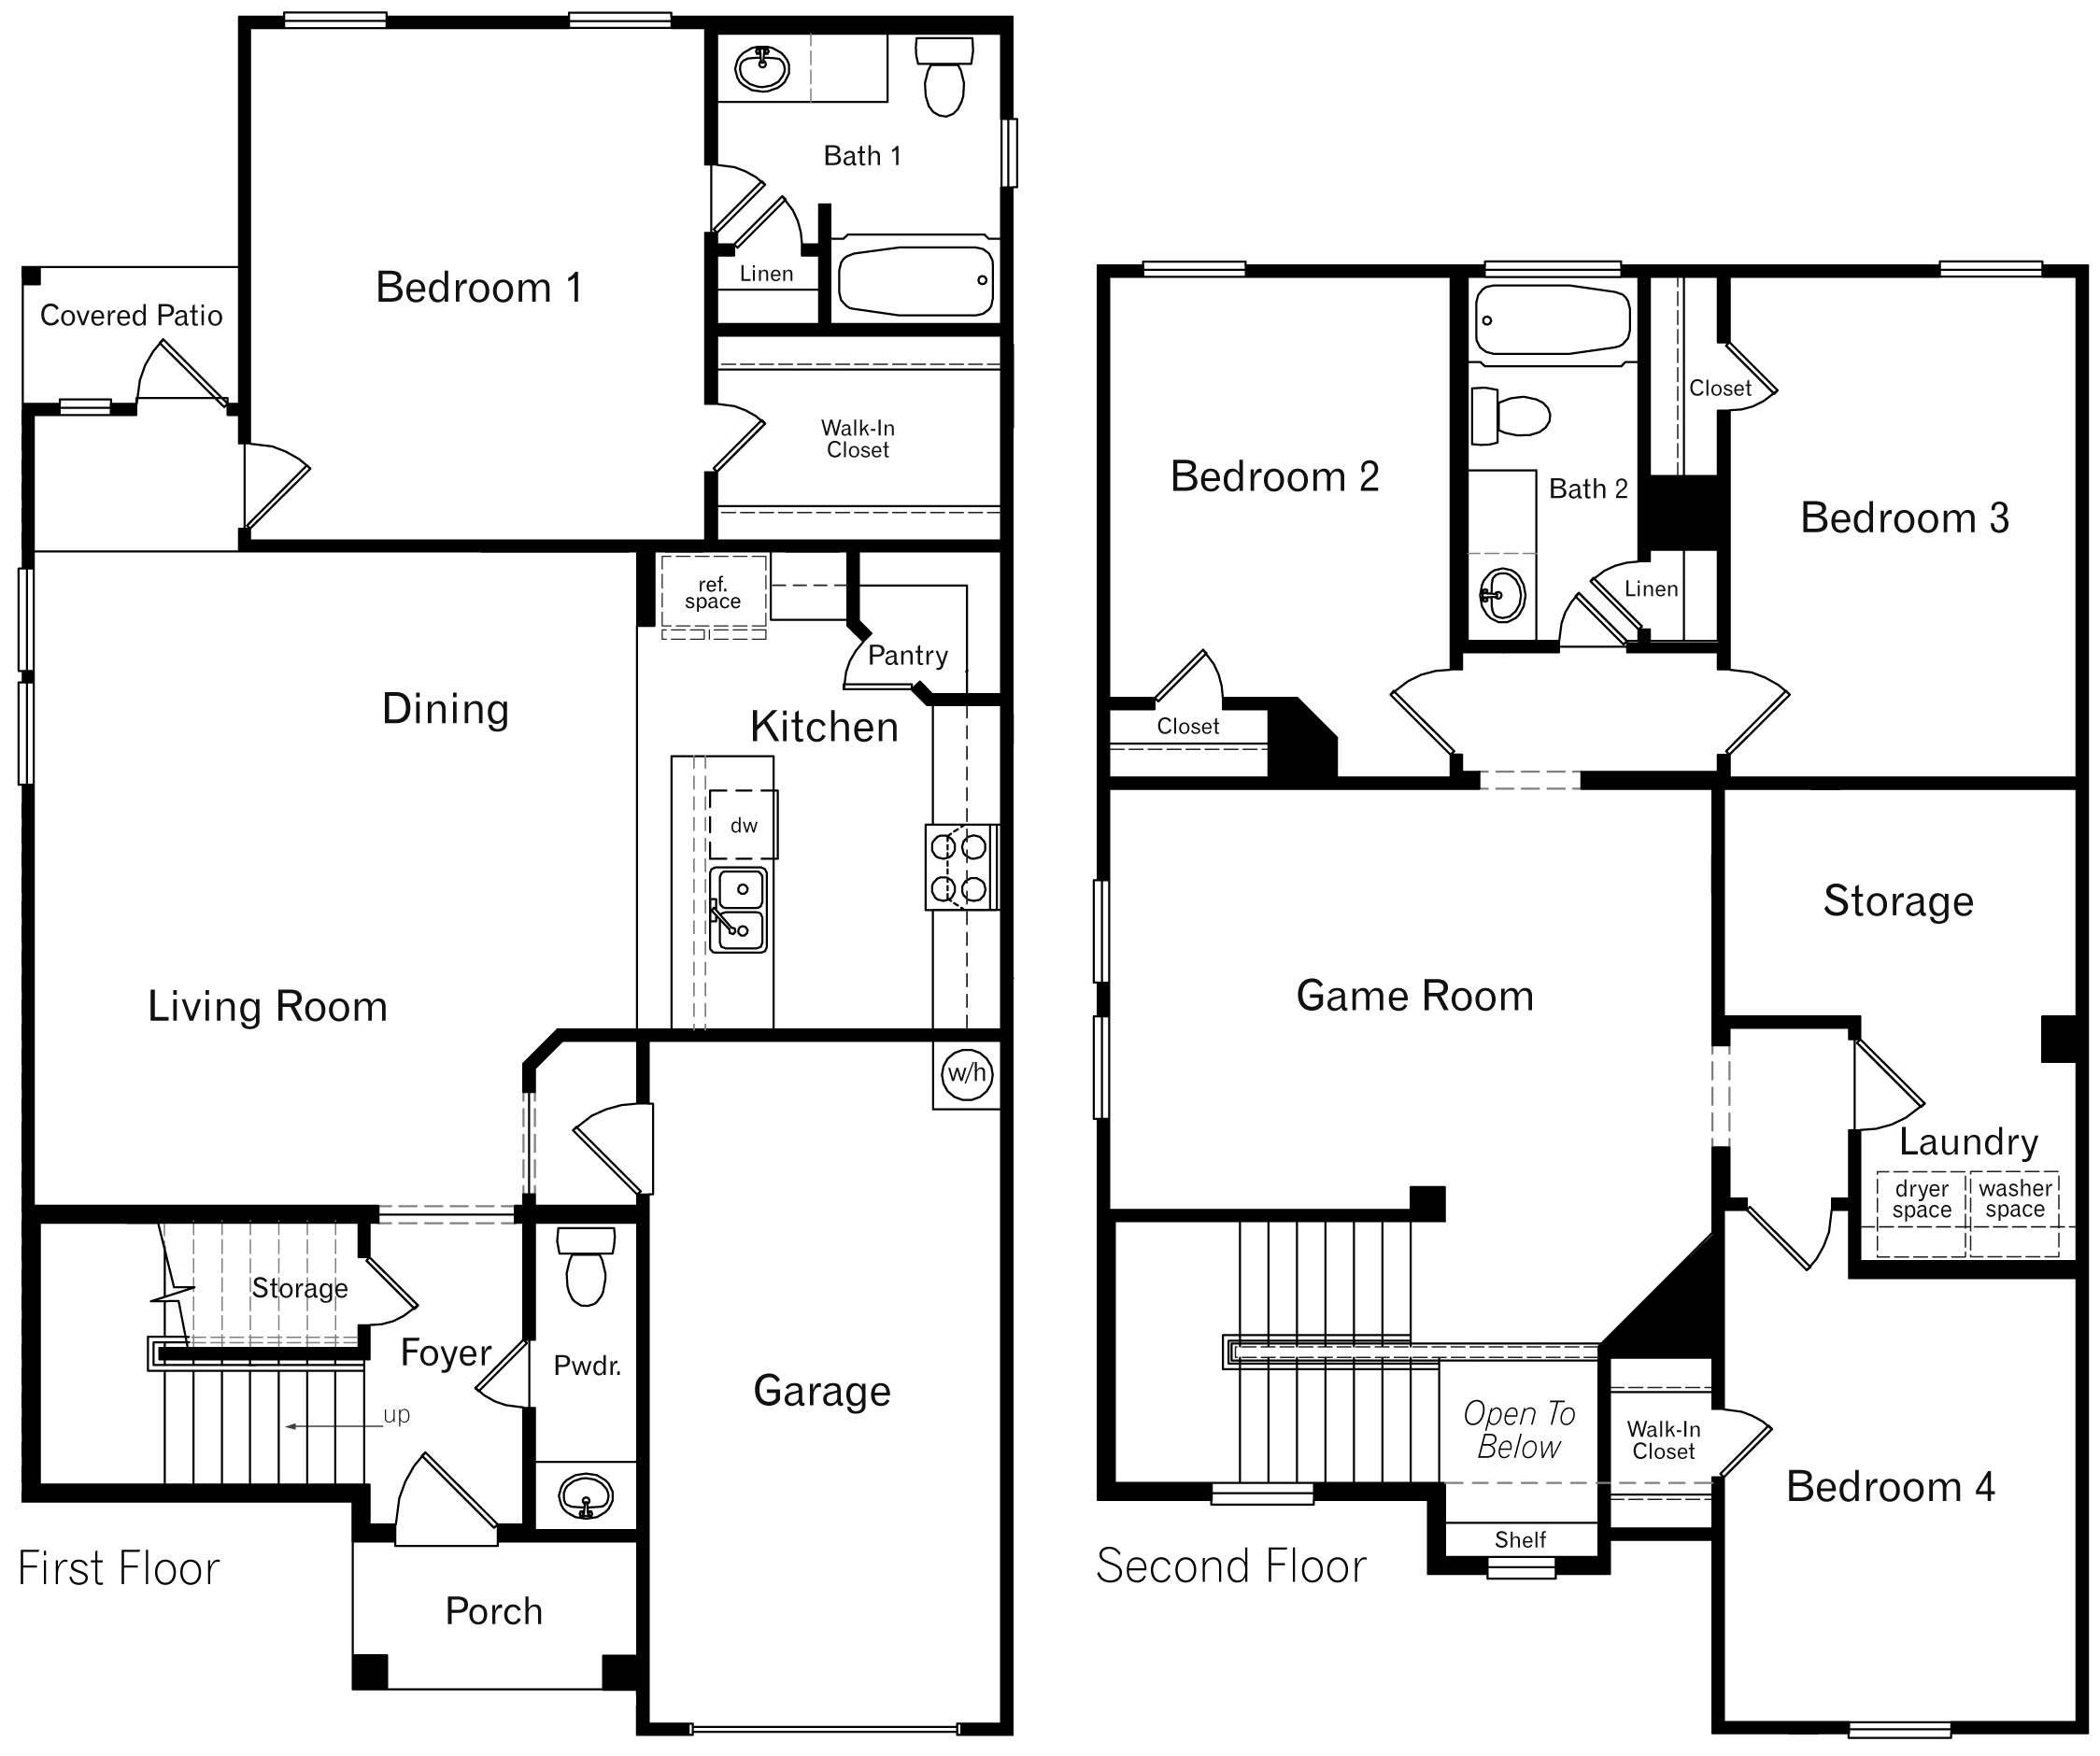 DR Horton San Antonio Laurel Vistas the reese floor plan 2084 square feet 4 bedroom 2.5 bathroom 2 story 1 car garage